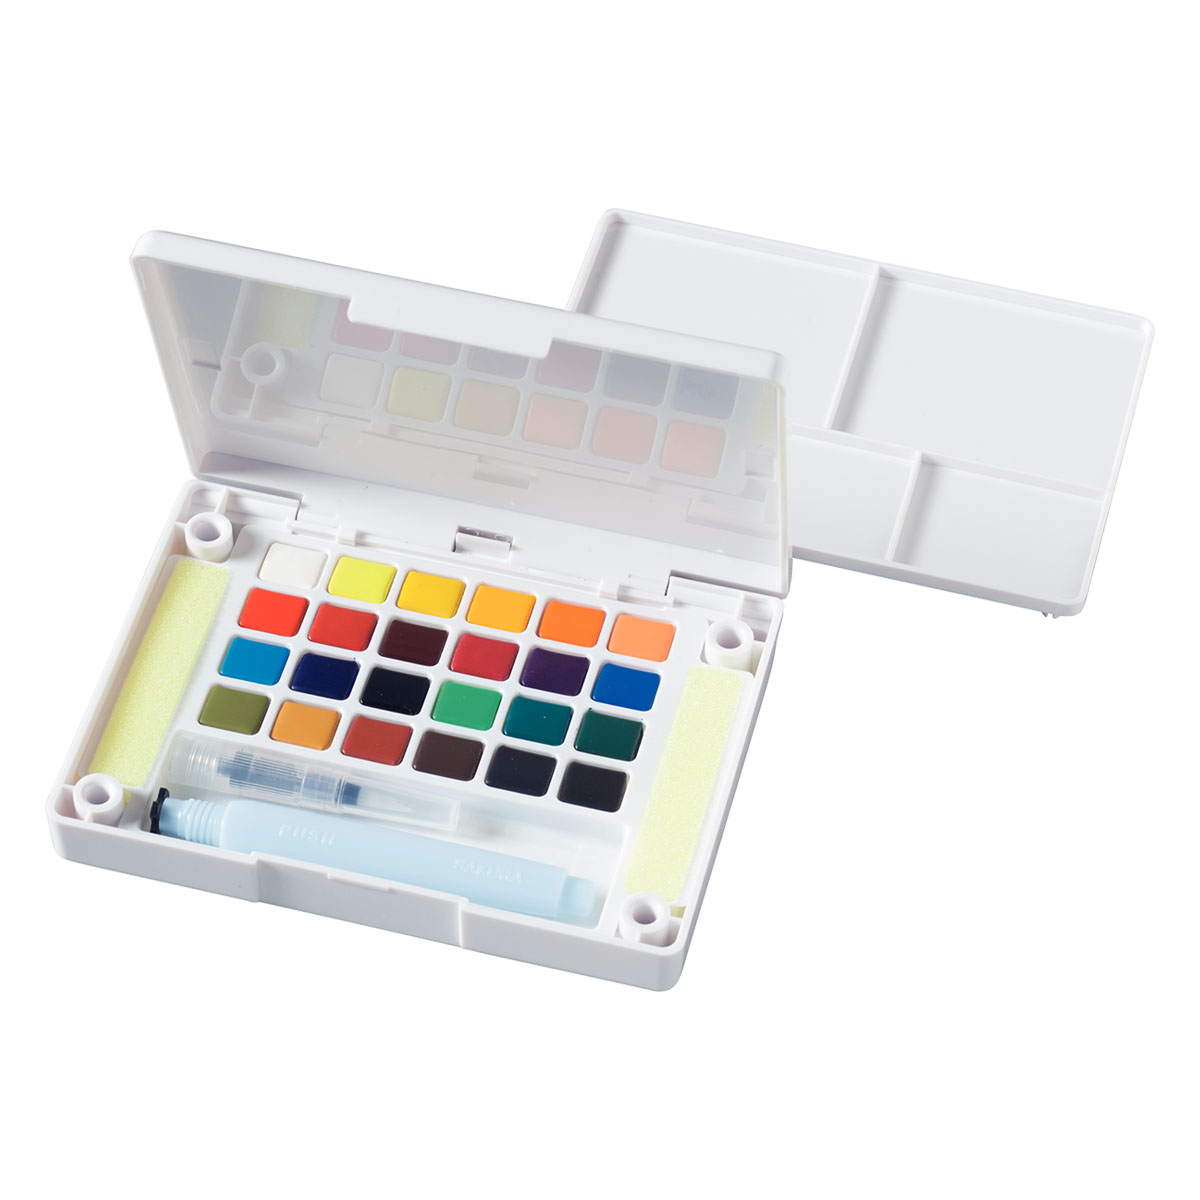 Koi Målarset Water Colors Sketch Box 24 + Pensel i gruppen Konstnärsmaterial / Färger / Akvarellfärg hos Pen Store (125614)